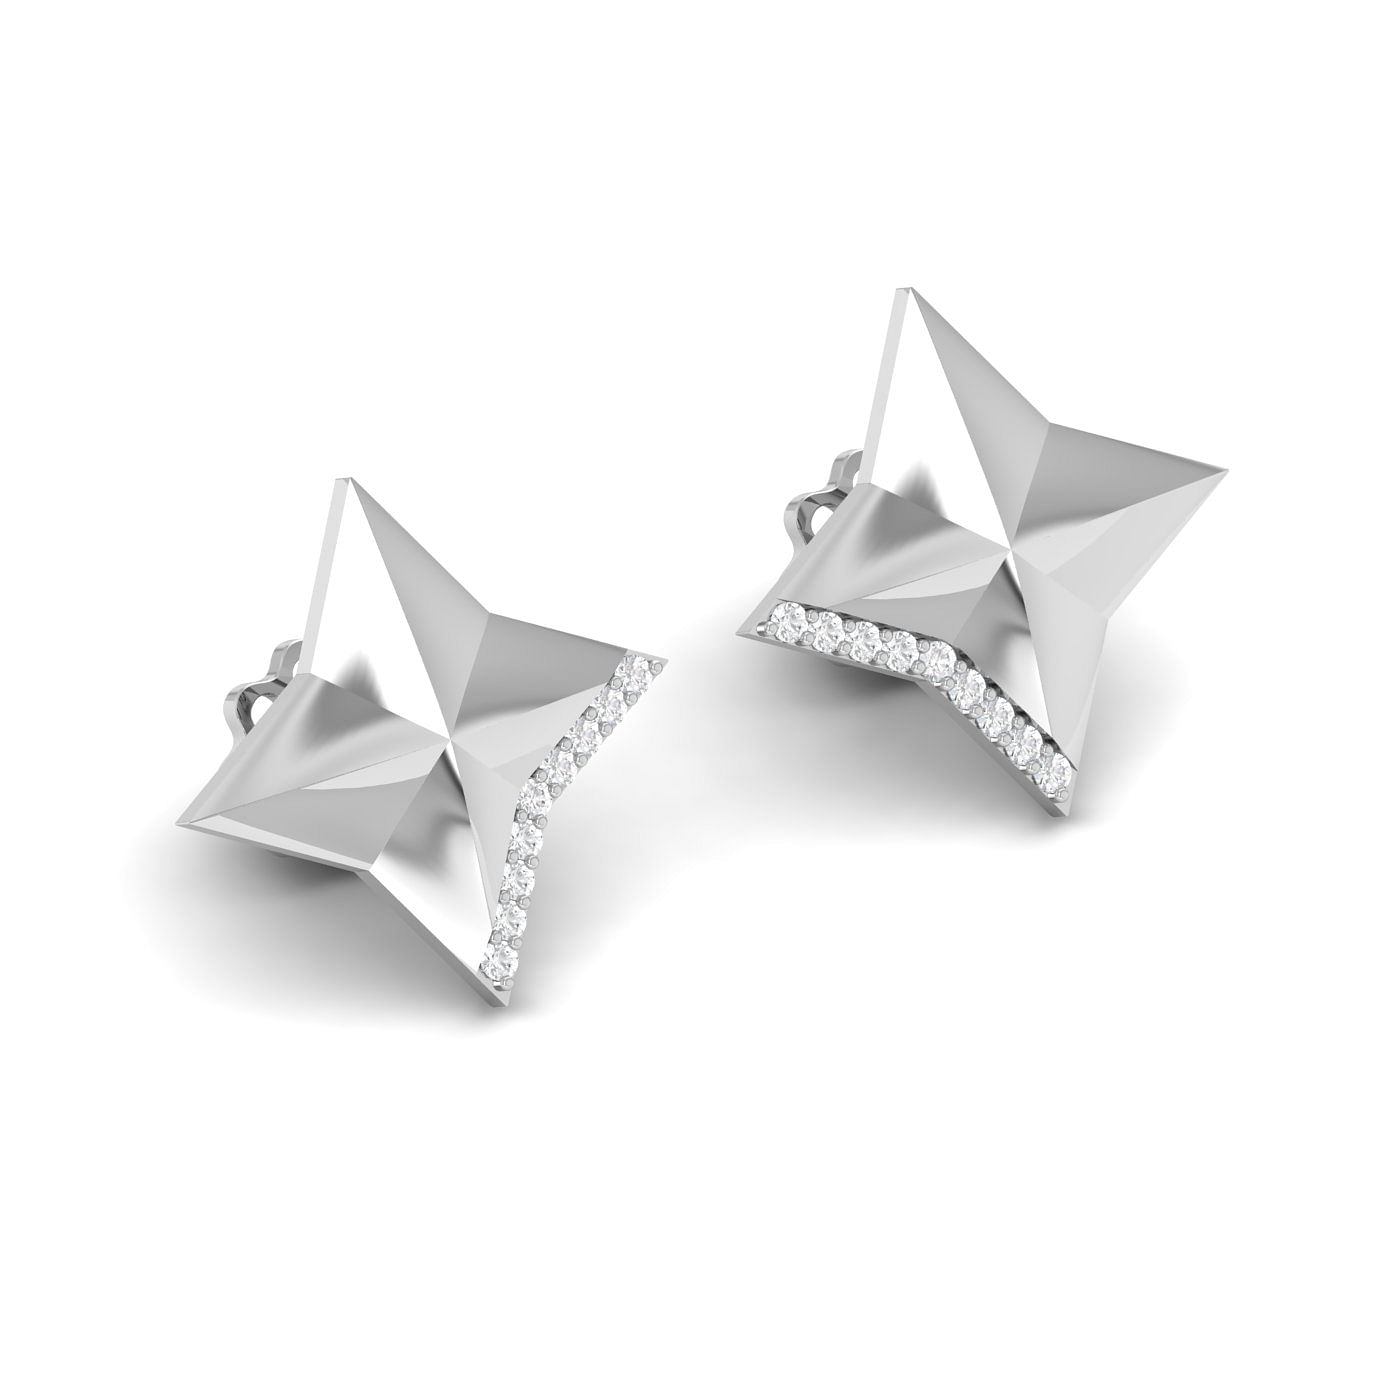 White gold Latest Design Diamond Studs Earring